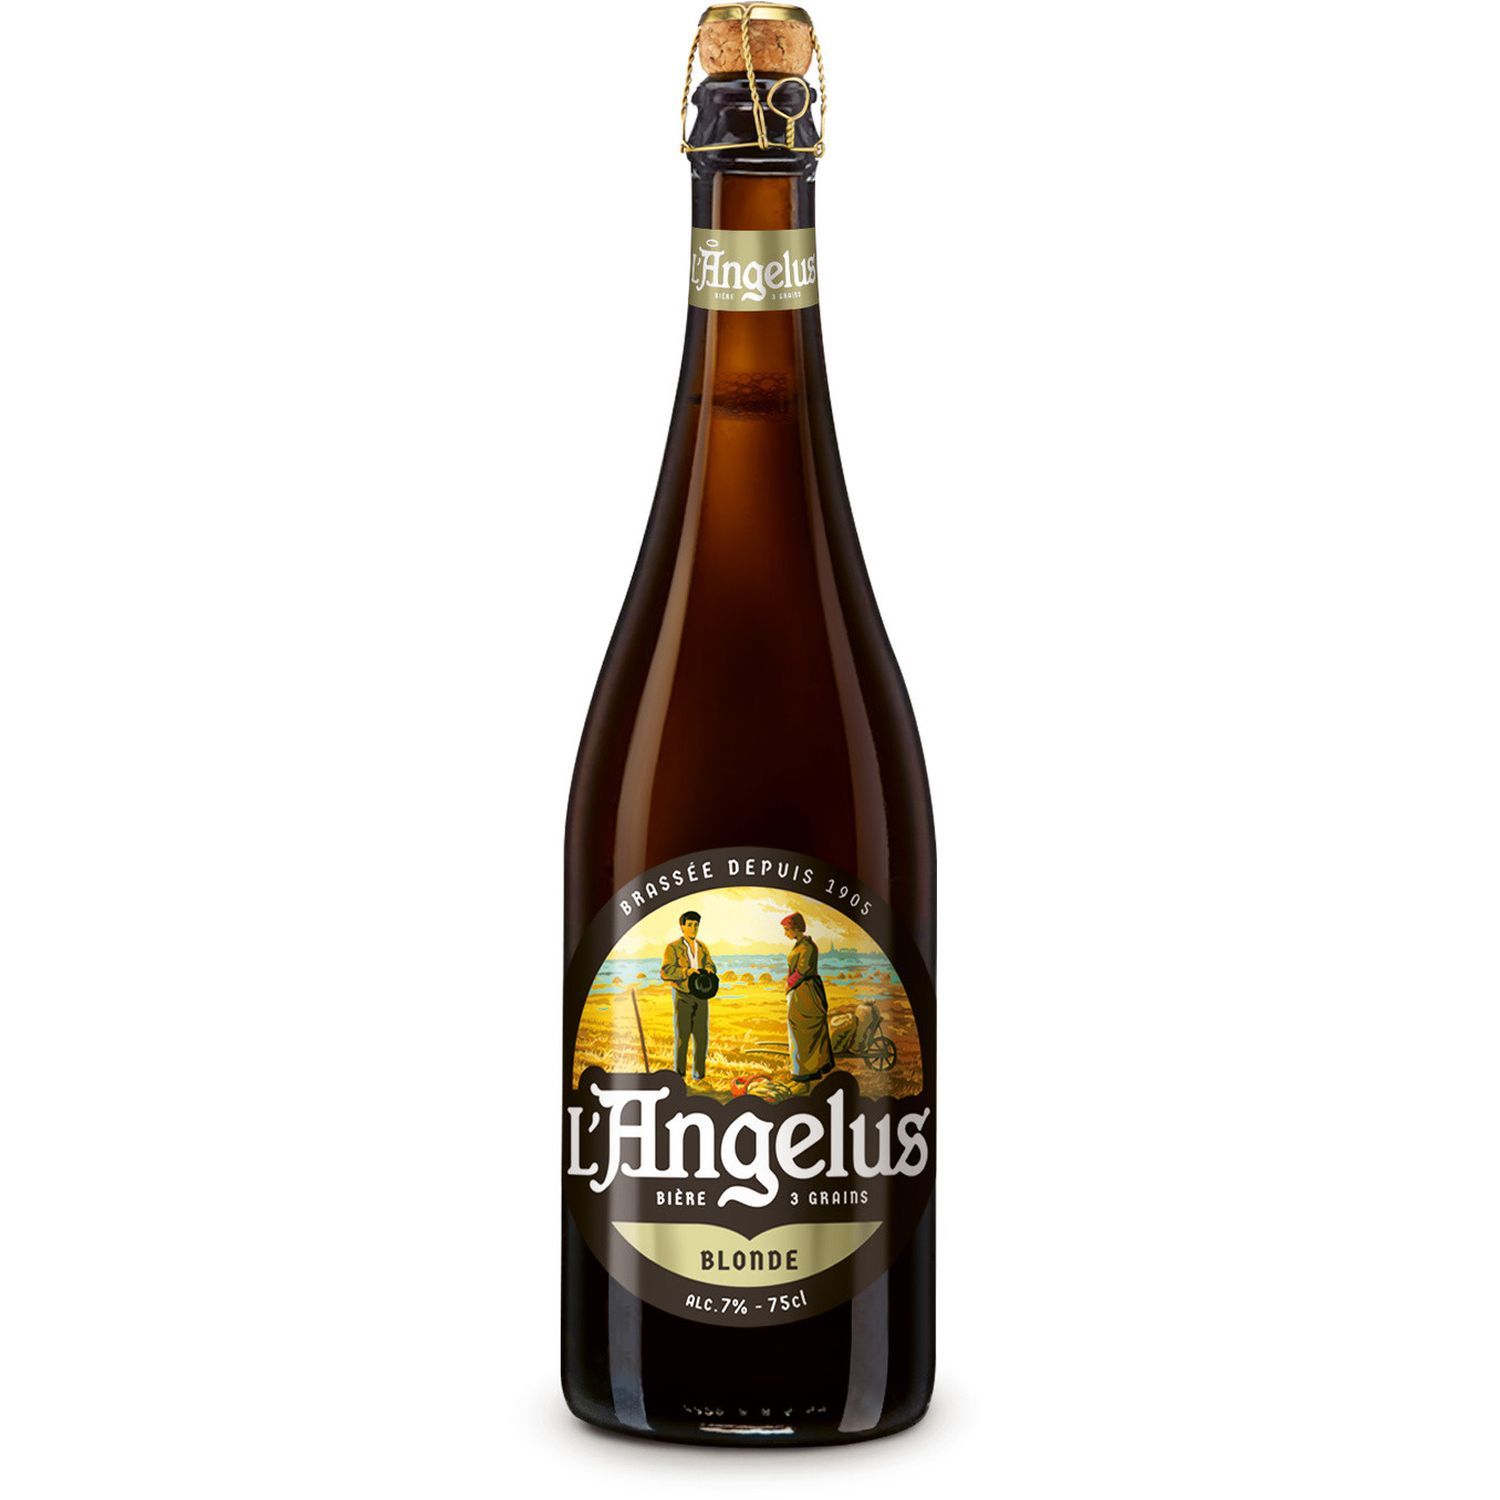 L'Angelus Blonde 33cl  Le meilleur de la bière en bouteilles